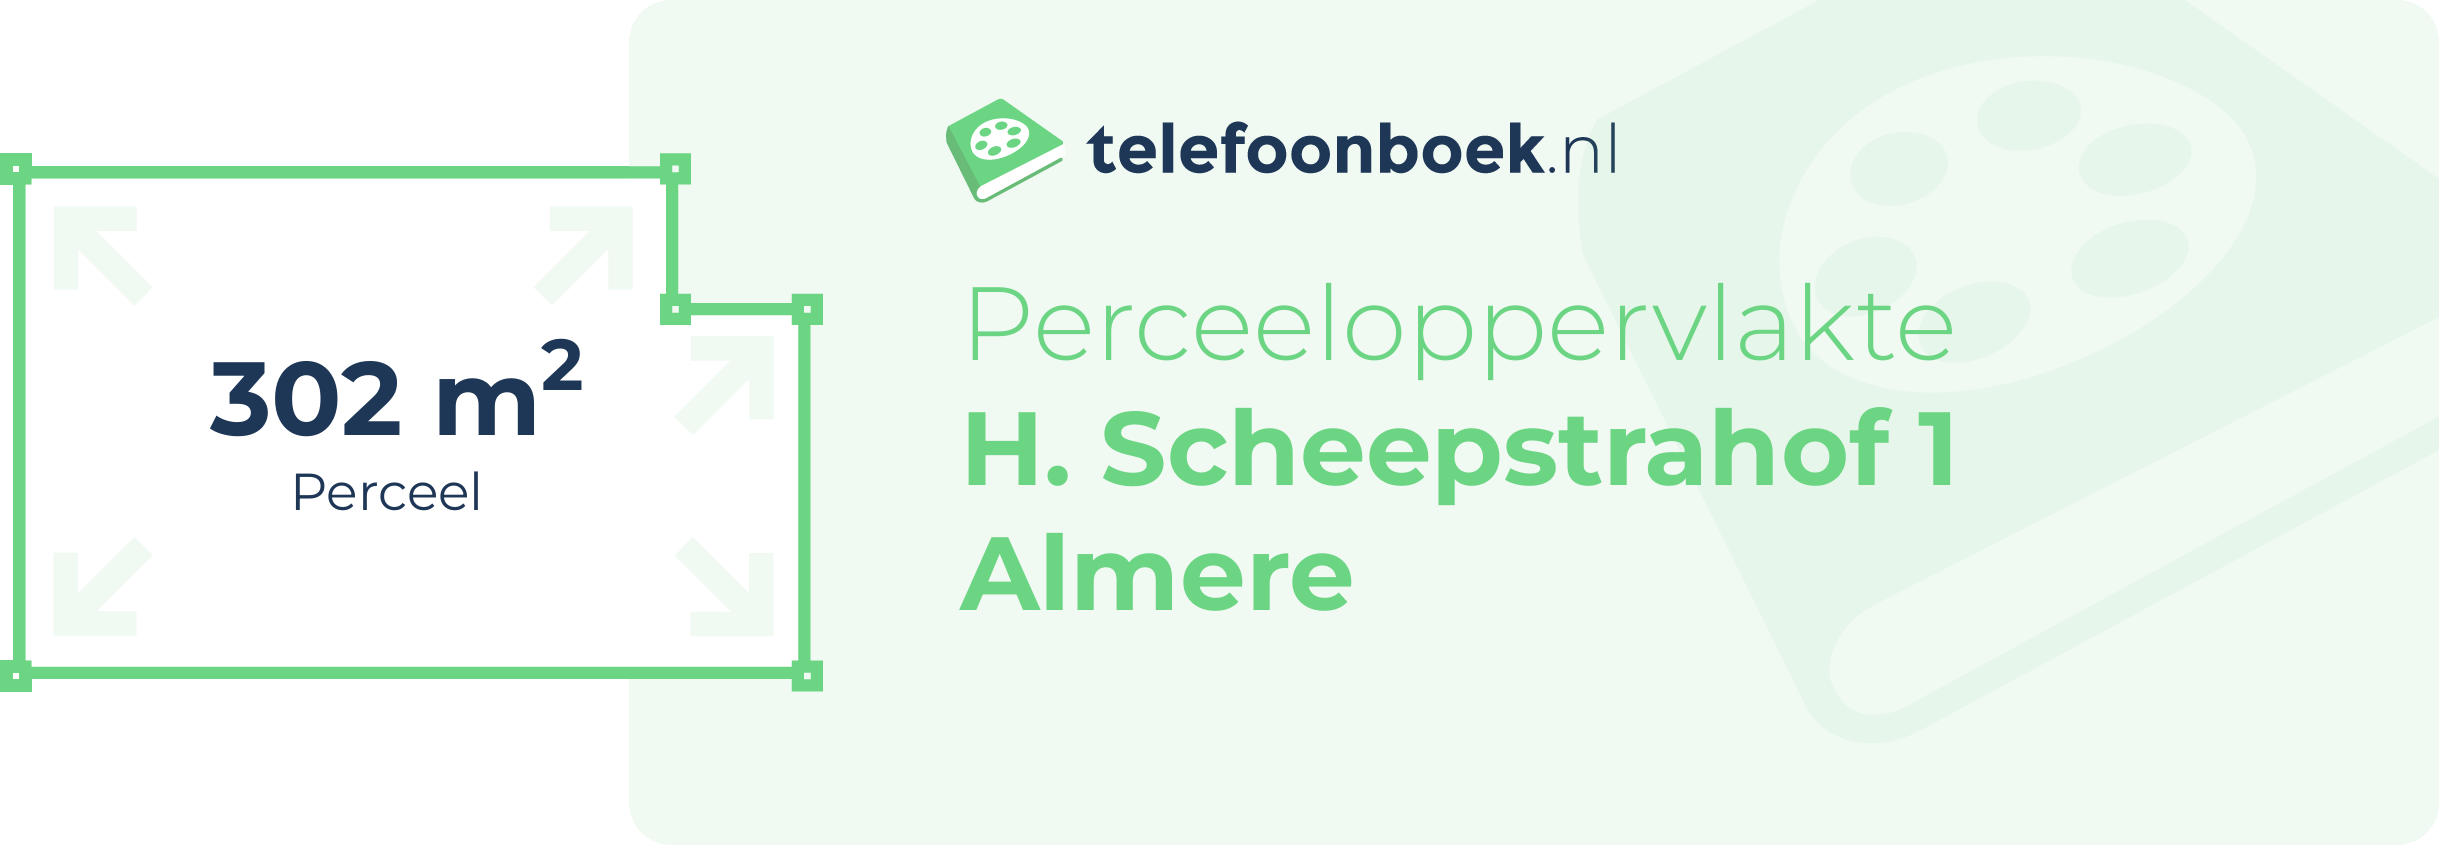 Perceeloppervlakte H. Scheepstrahof 1 Almere